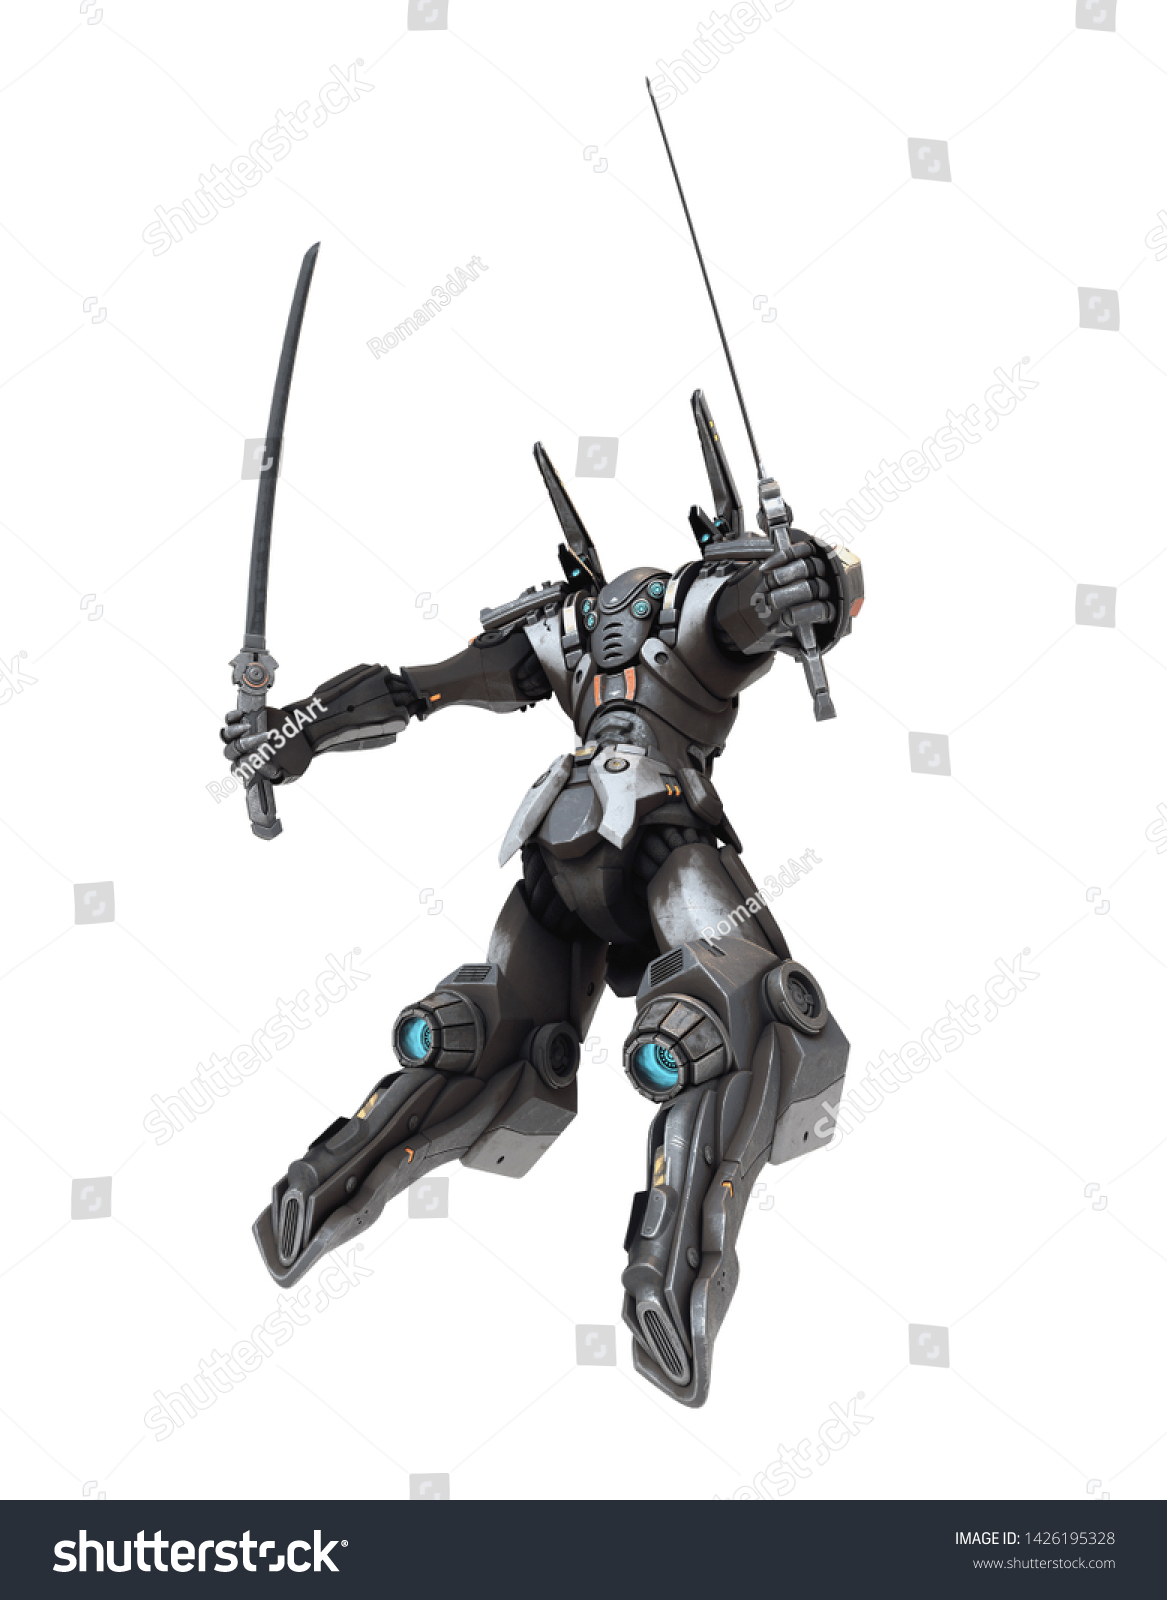 2本の刀を持つsfのメッチ戦士 飛び跳ねるポーズを取る 白とグレーの色で金属を引っ掻いた未来的なロボット メッチバトル 白い背景に3dレンダリング の イラスト素材